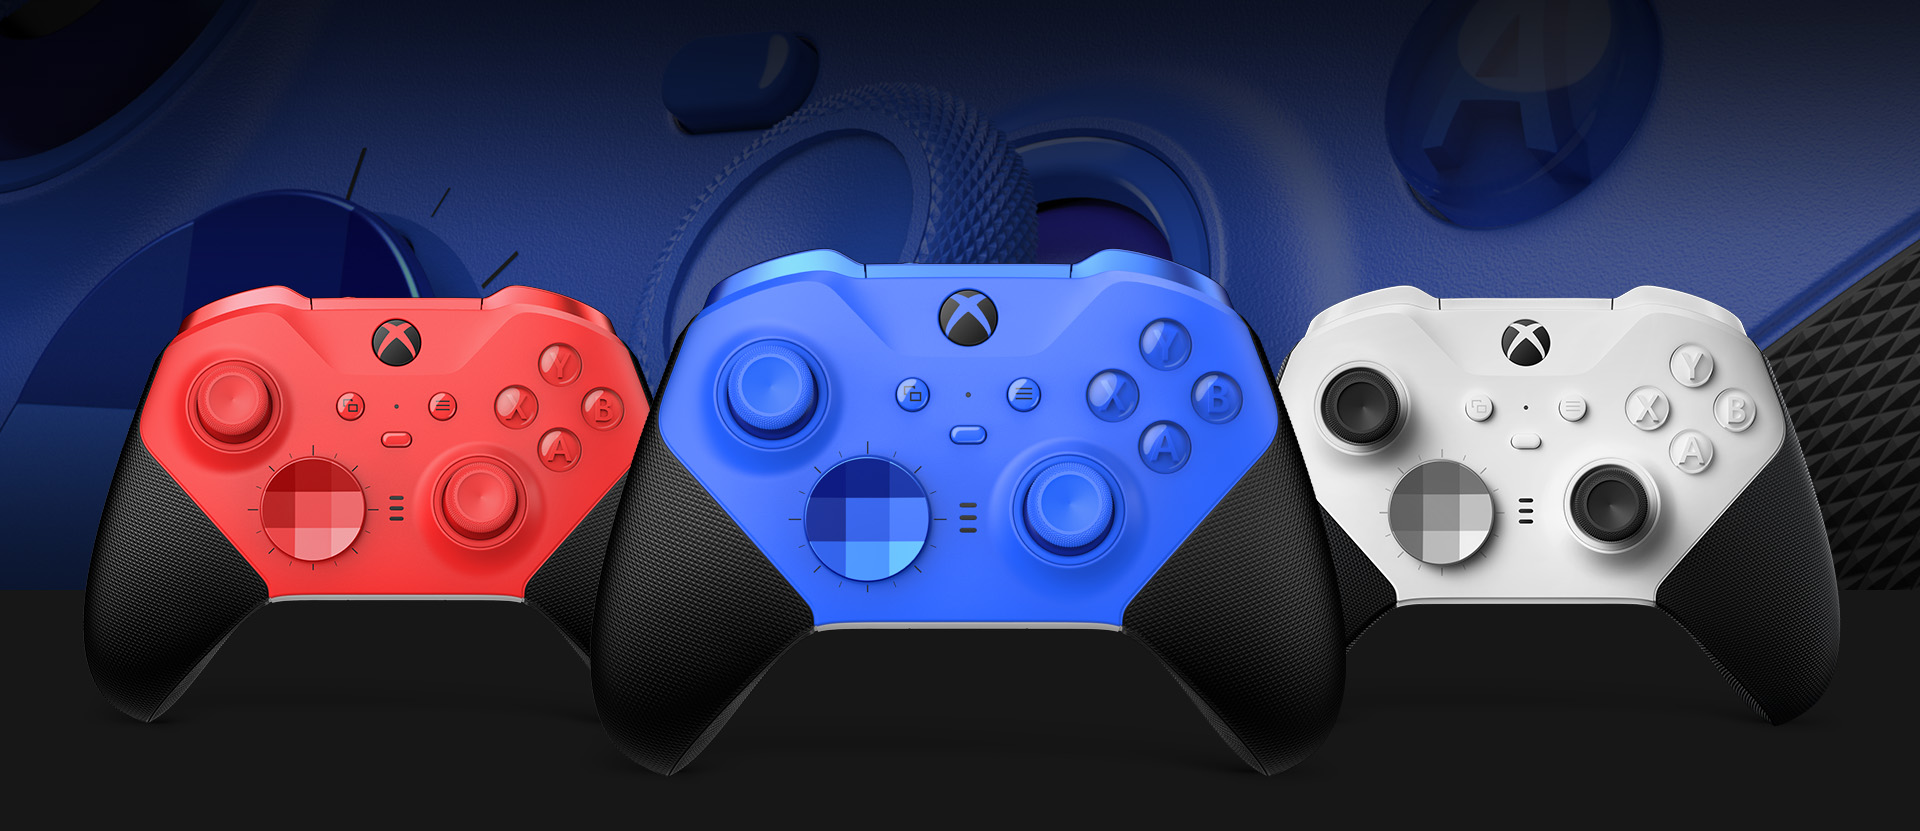 Bezprzewodowy kontroler Xbox Elite Series 2 – Core (niebieski) widziany z przodu z innymi opcjami kolorystycznymi pokazanymi obok. W tle zbliżenie na drążki kontrolera i teksturowany uchwyt.